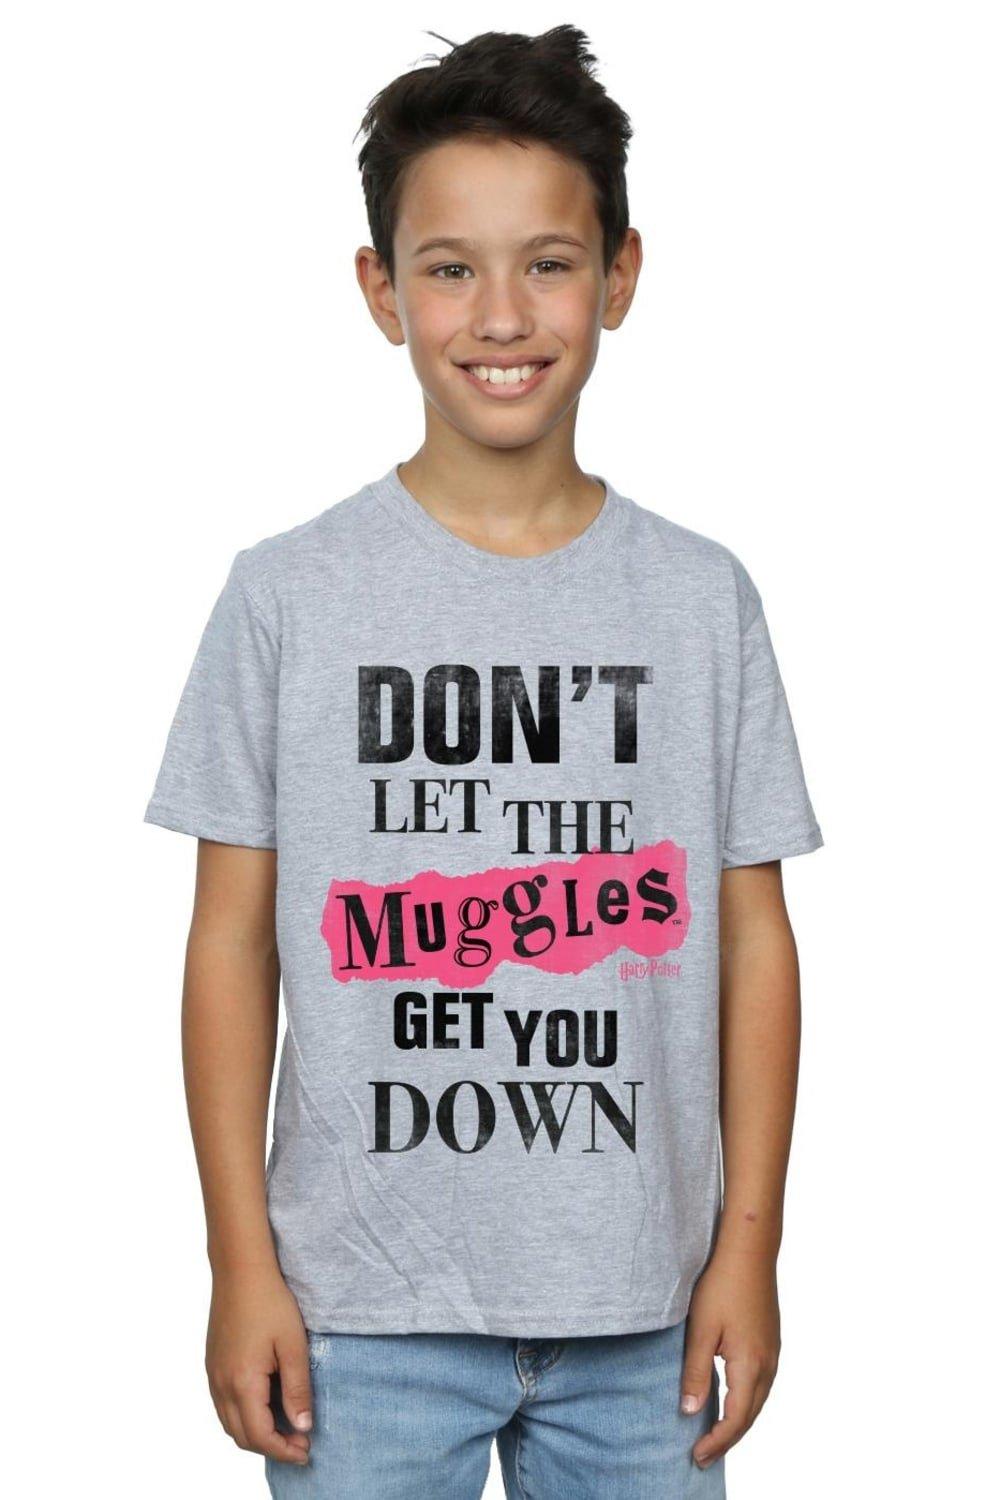 Muggles Clippings T-Shirt